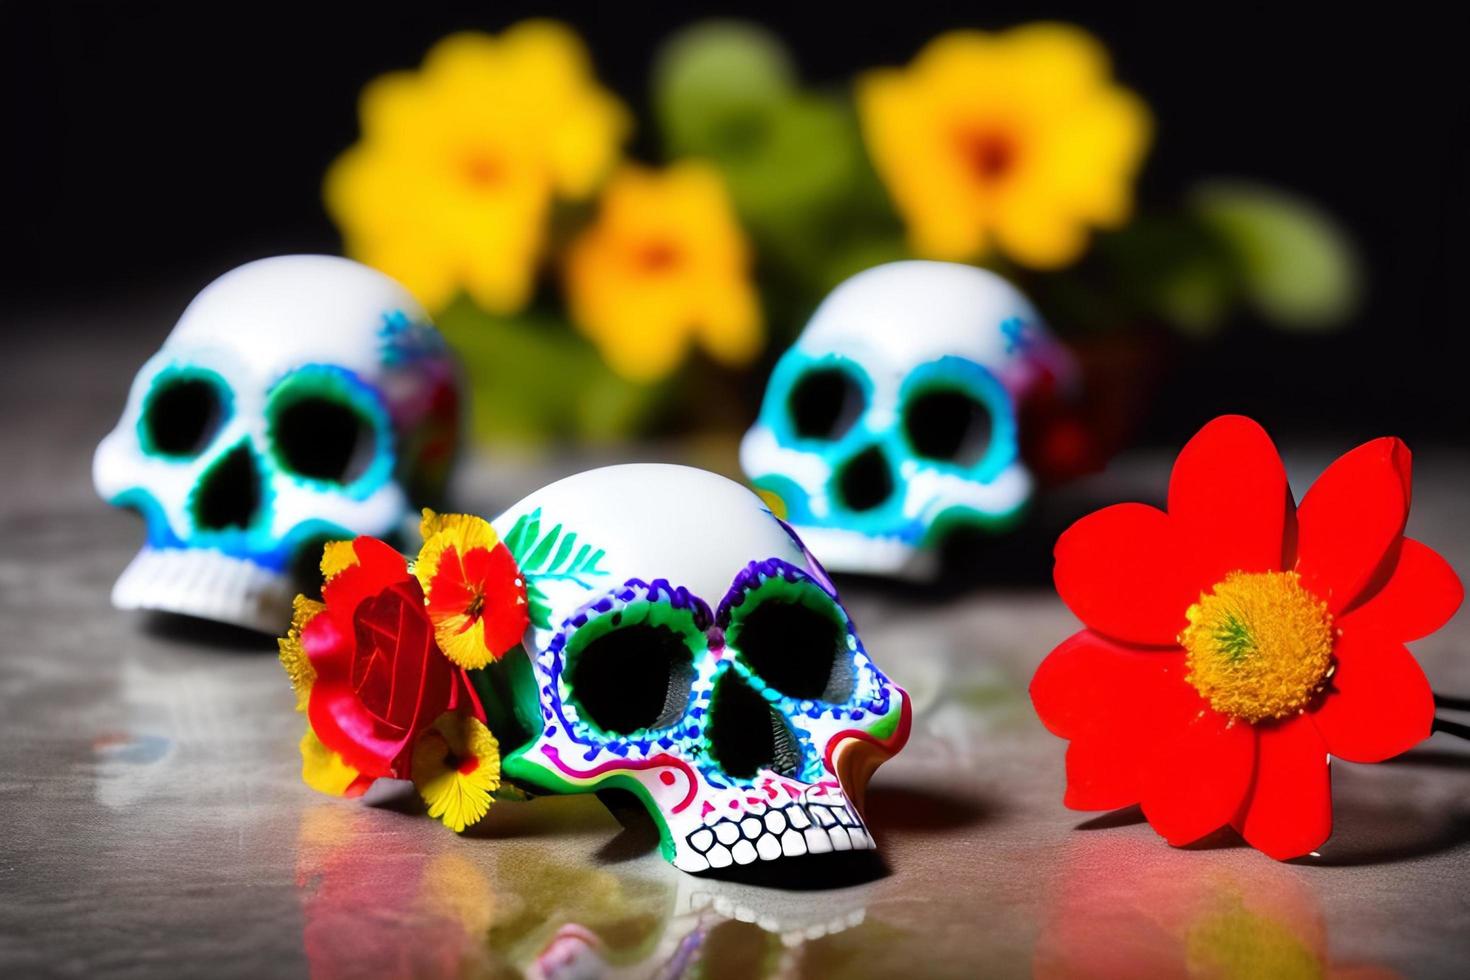 dia de los muertos, festival culturel mexicain traditionnel. jour des morts. photo